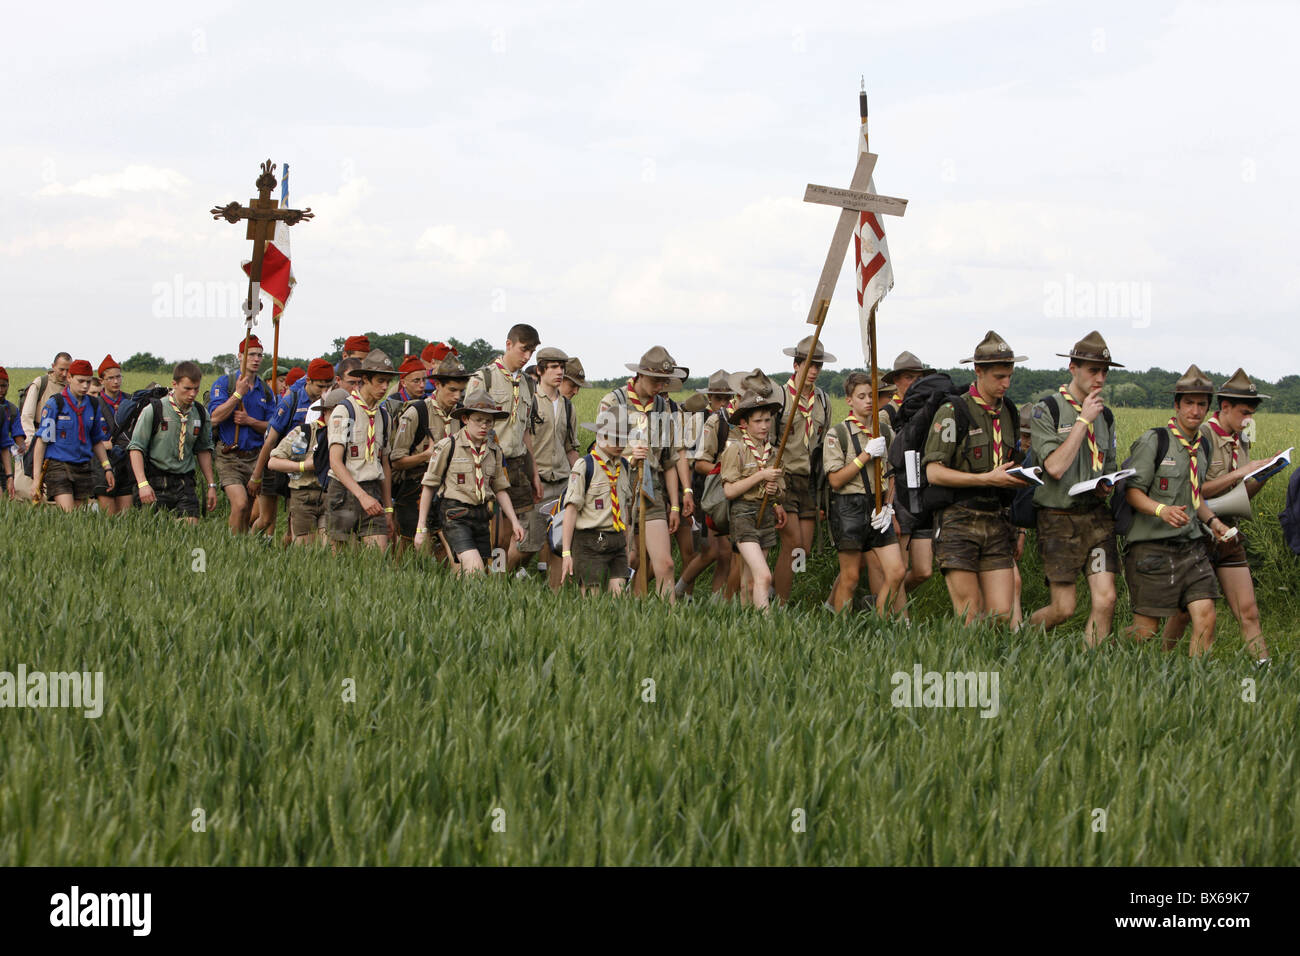 Traditionalist Catholic pilgrimage, Eure-et-Loir, France, Europe Stock Photo